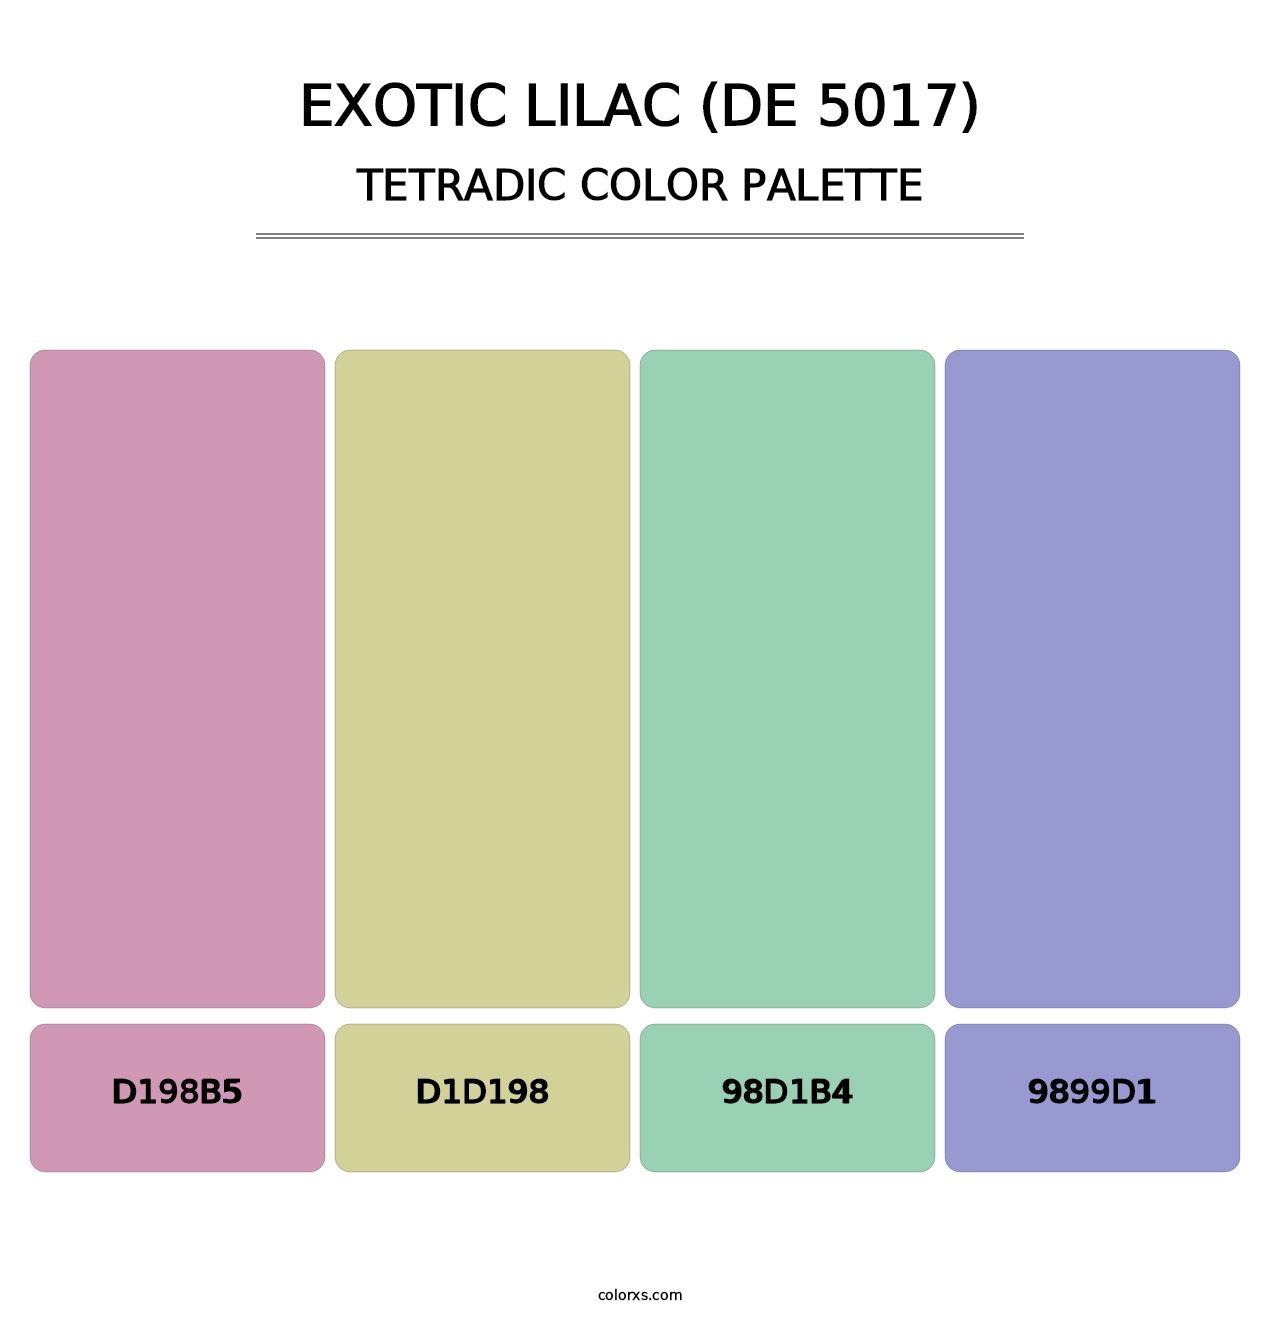 Exotic Lilac (DE 5017) - Tetradic Color Palette